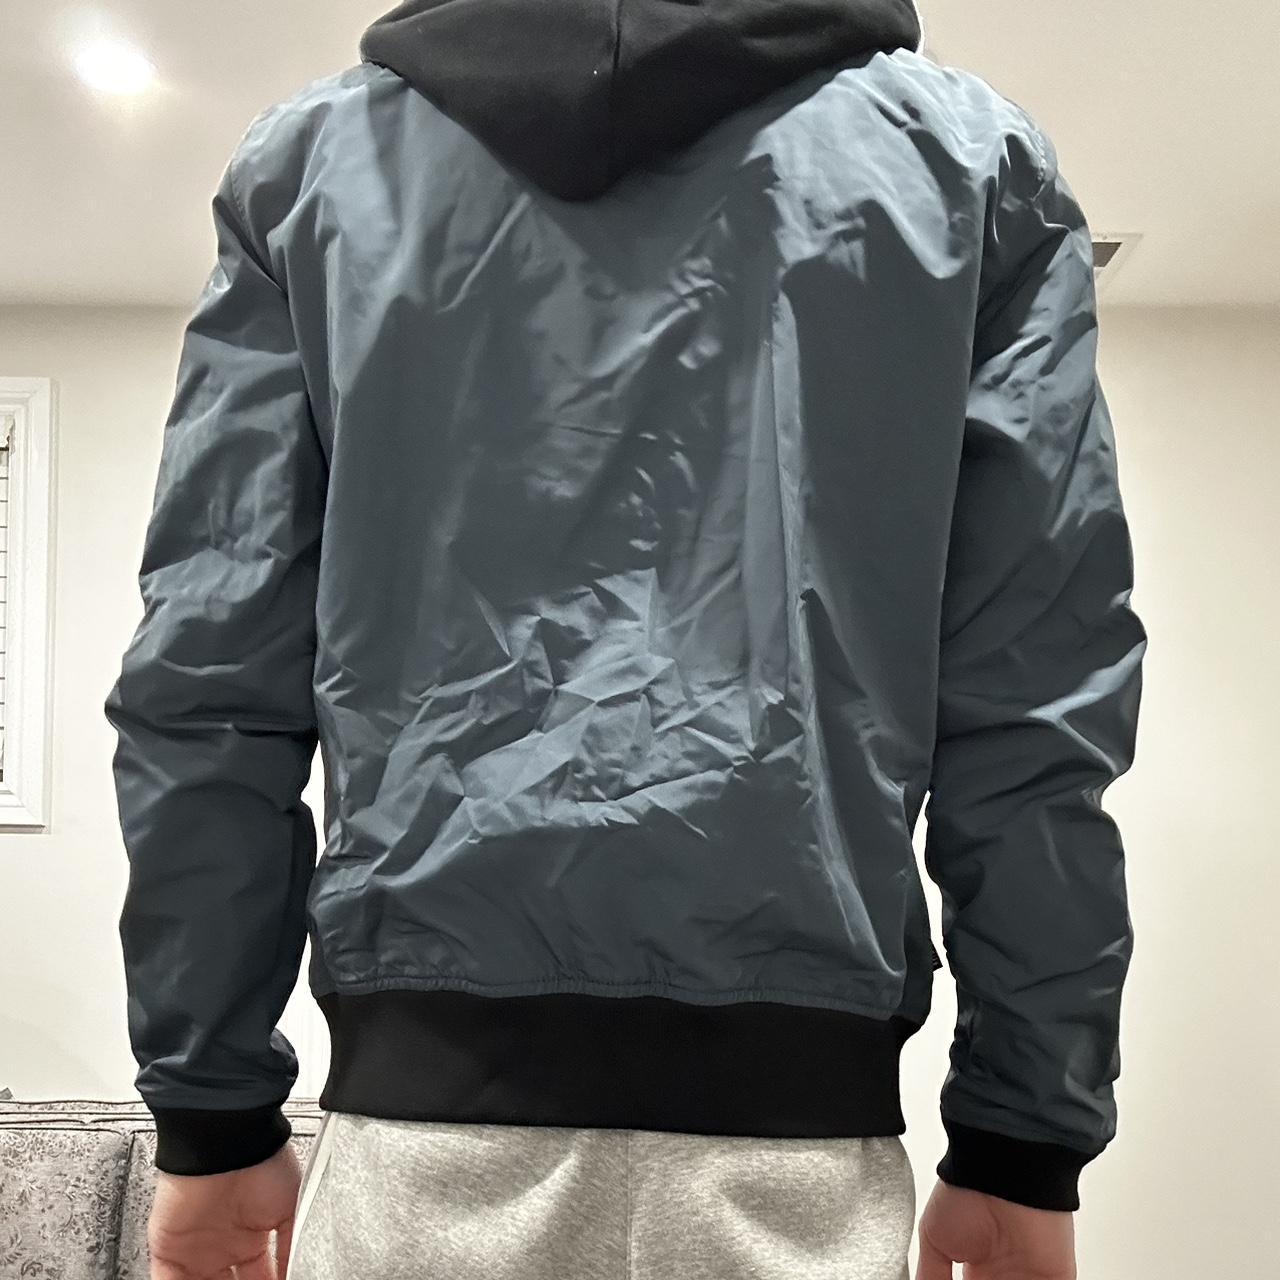 Hollister windbreaker snow jacket with fur inside - Depop